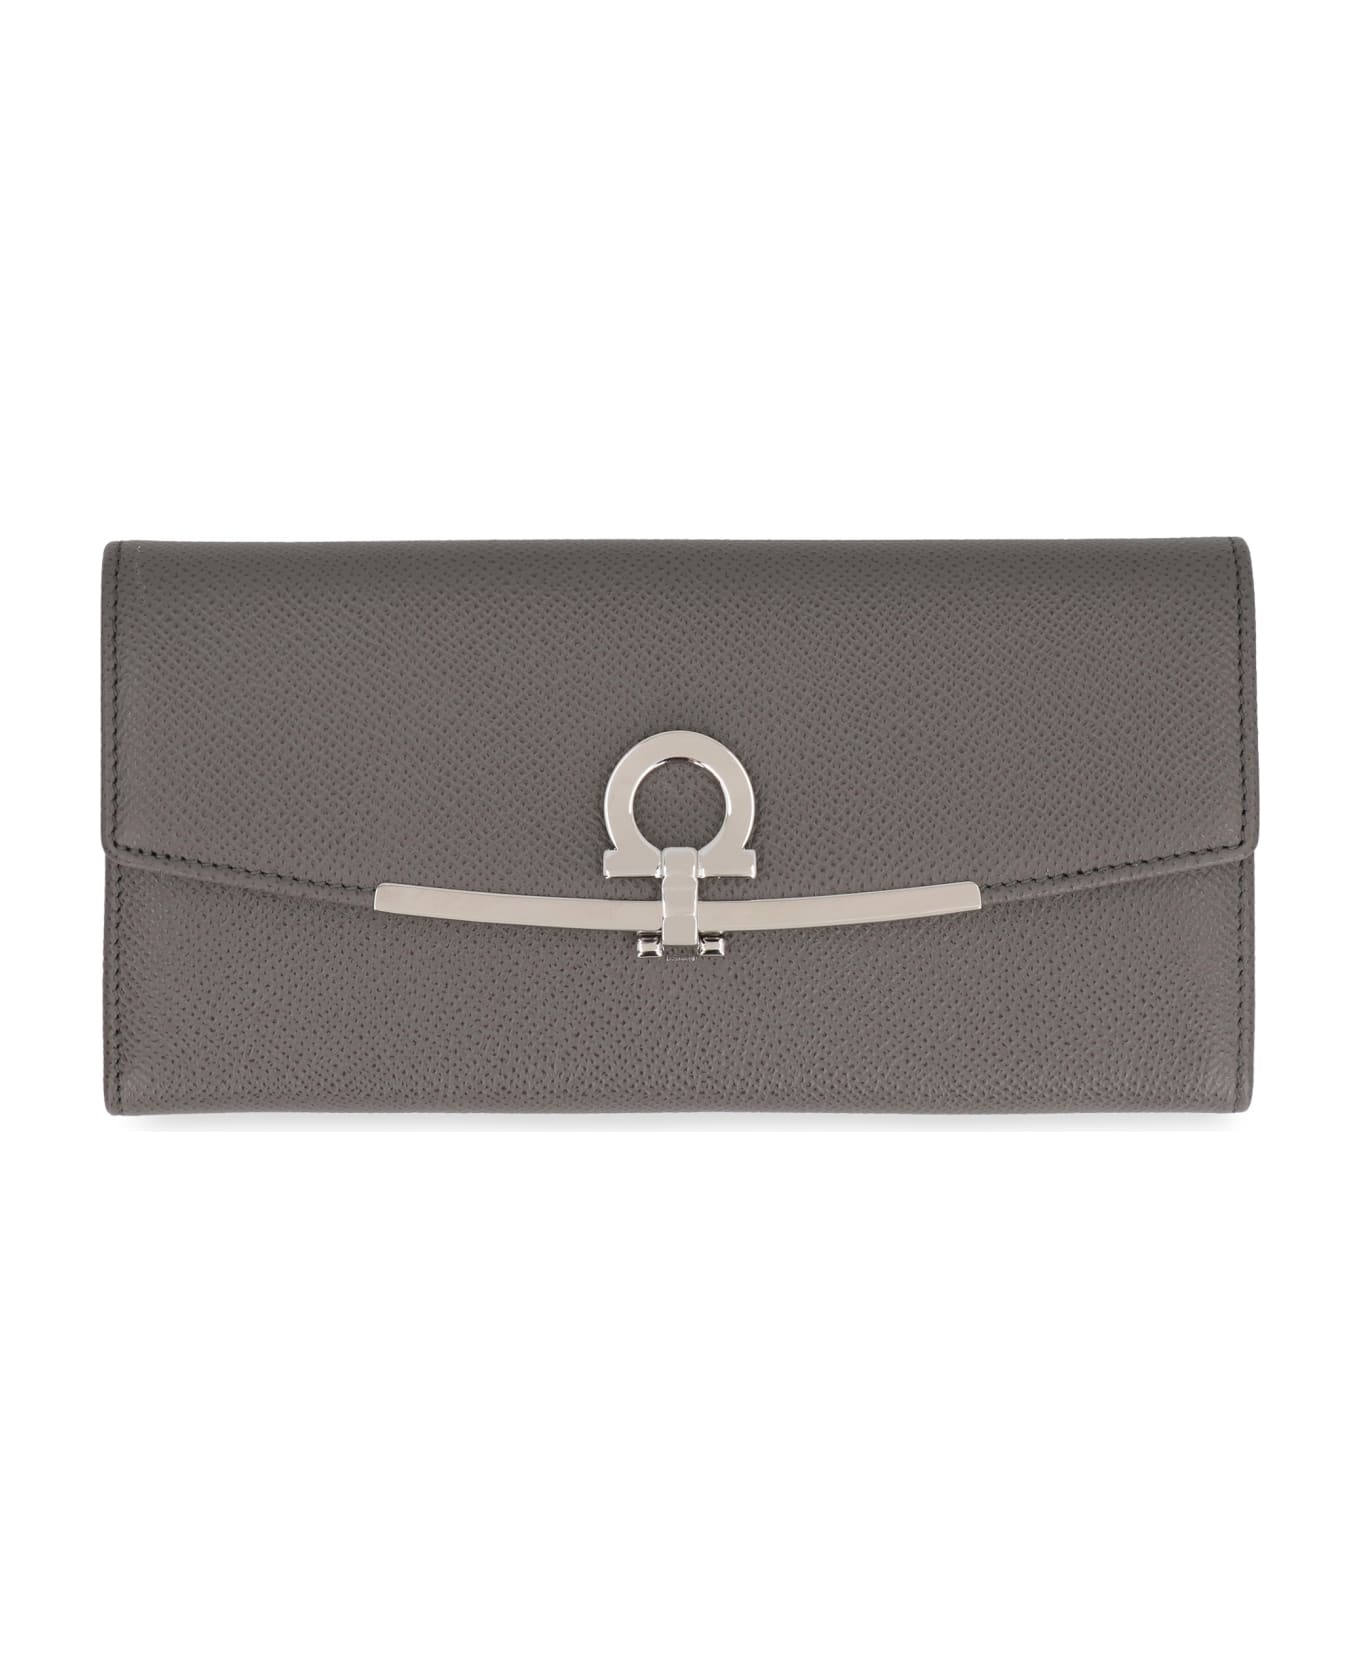 Ferragamo Gancini Leather Wallet - grey 財布